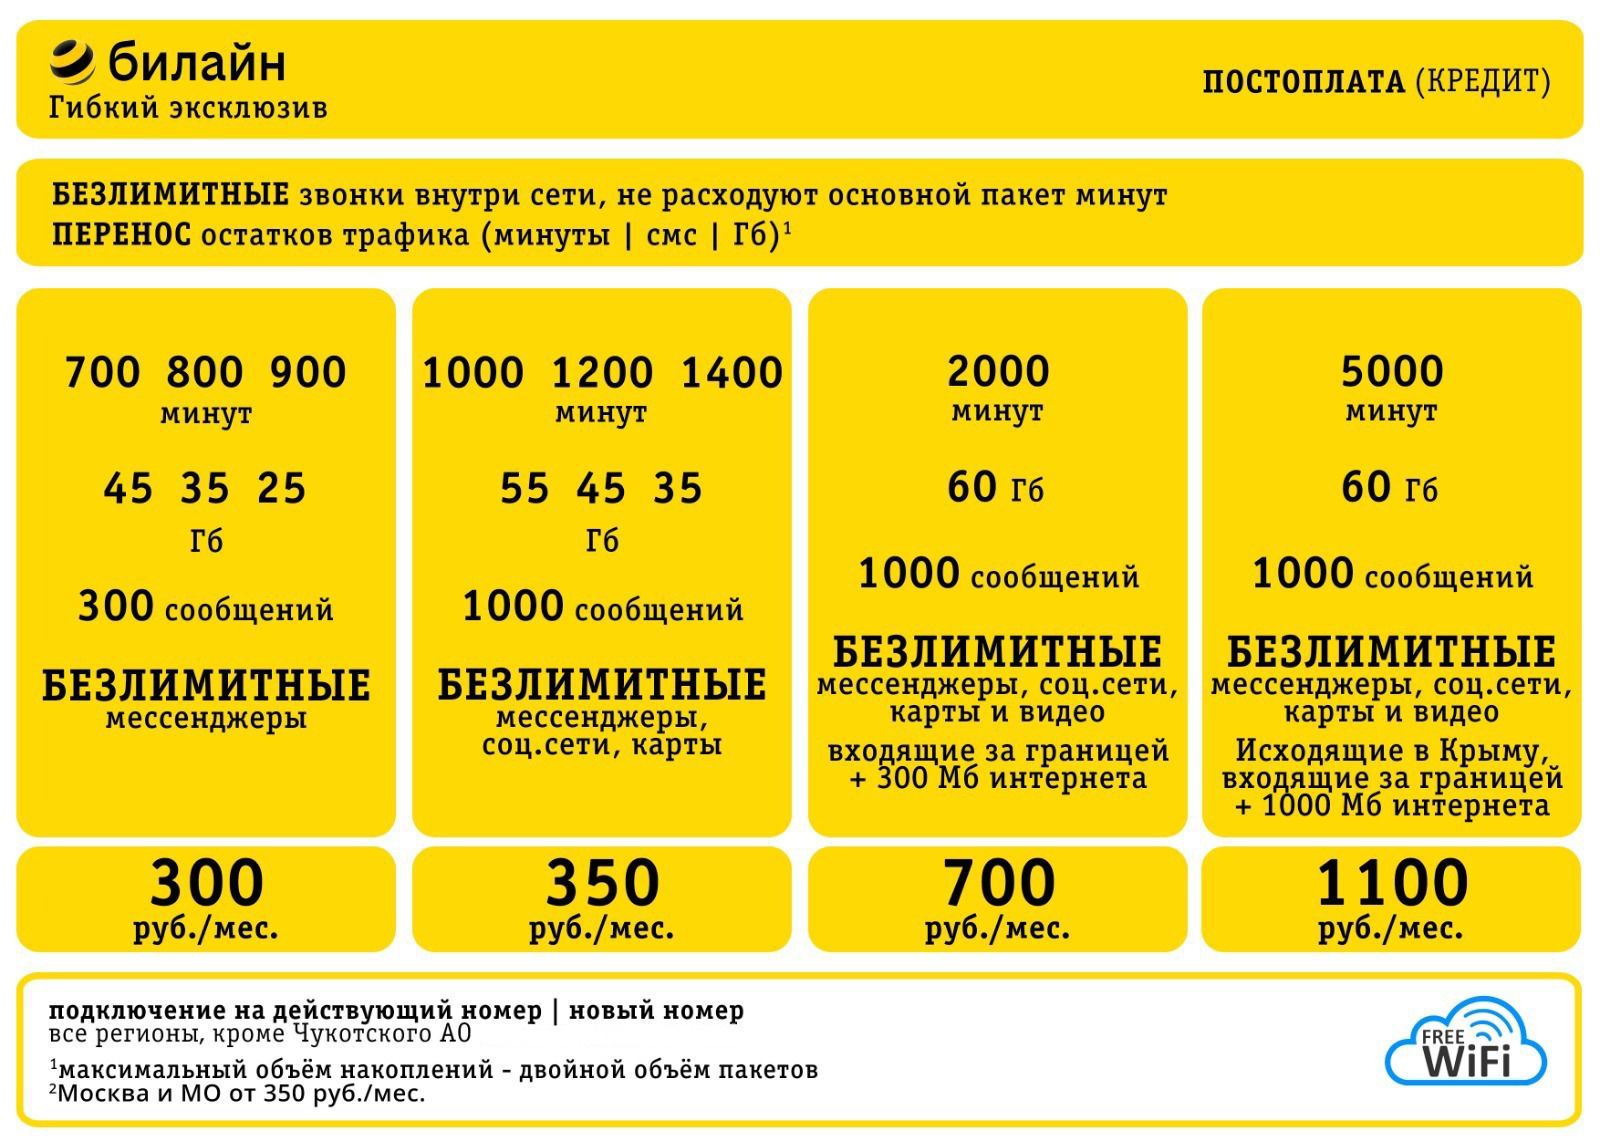 Гибкий эксклюзив на Ваш номер Билайн - абонентская плата от 300 руб. - в интернет-магазине ✯ 4g-inter.net ✯